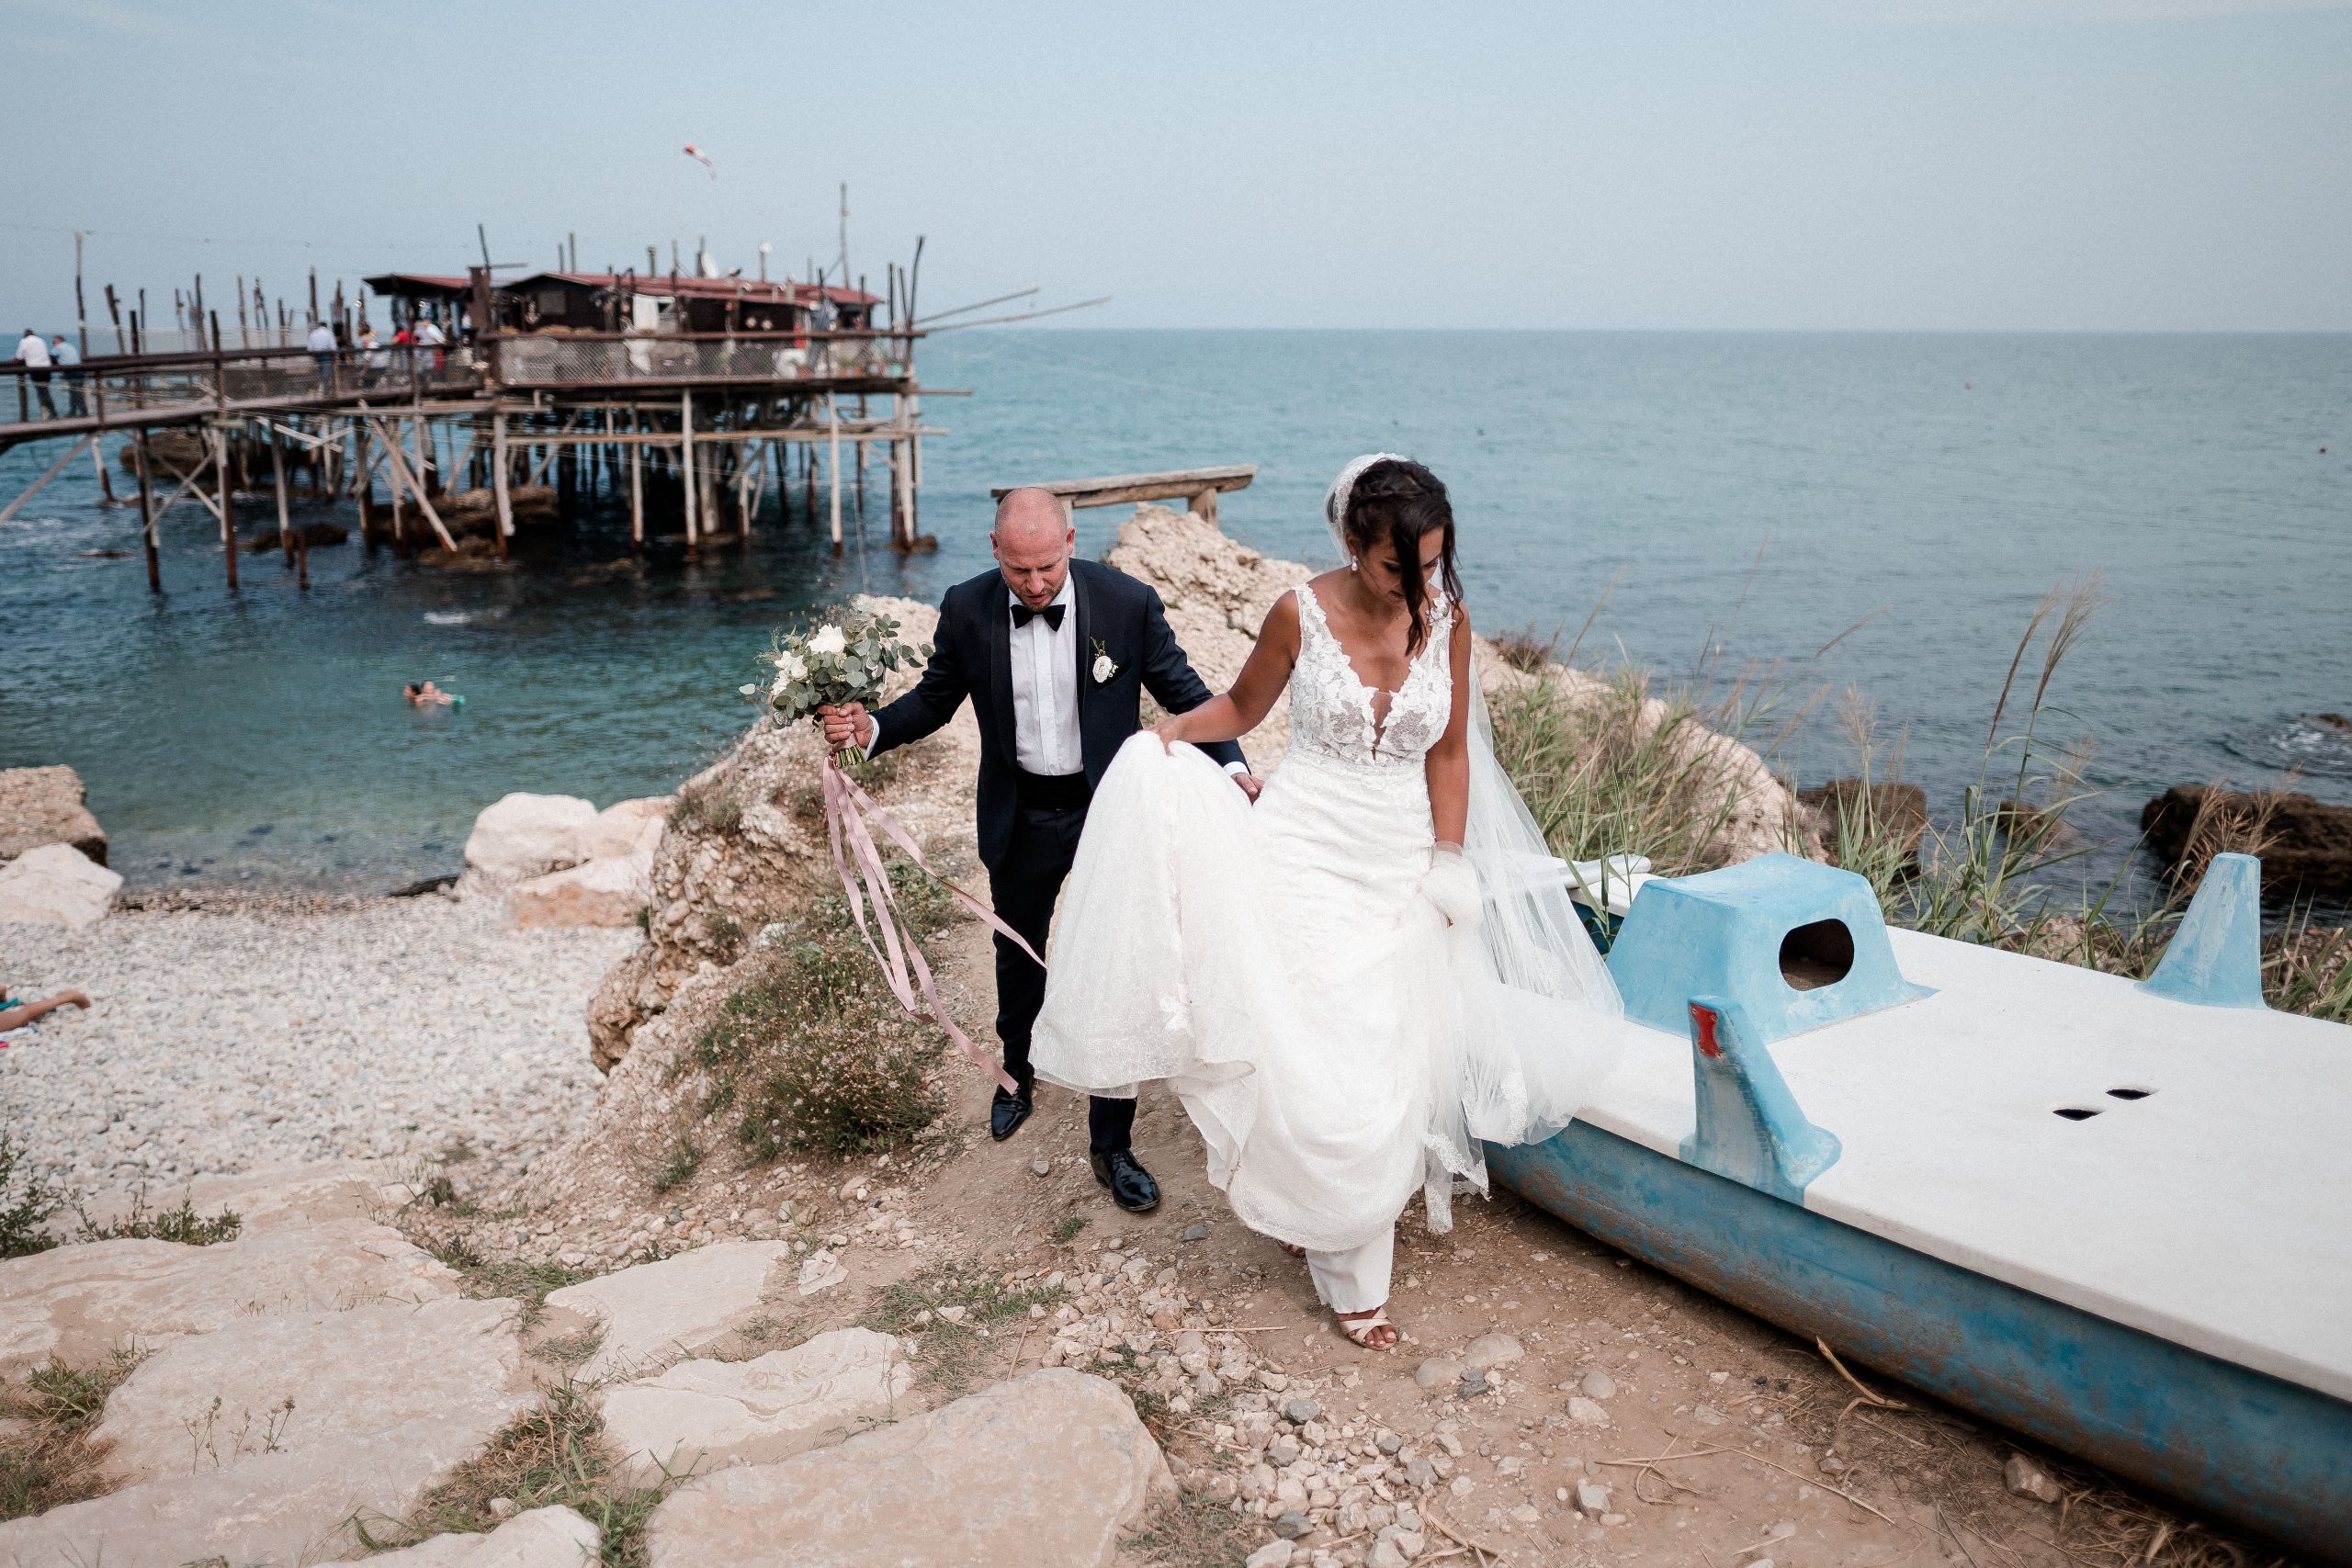 Aida + Tim | Hochzeitsfotografen am Bodensee Hochzeit - Pescara, Italien  - Hochzeitsfotografie von Aida und Tim